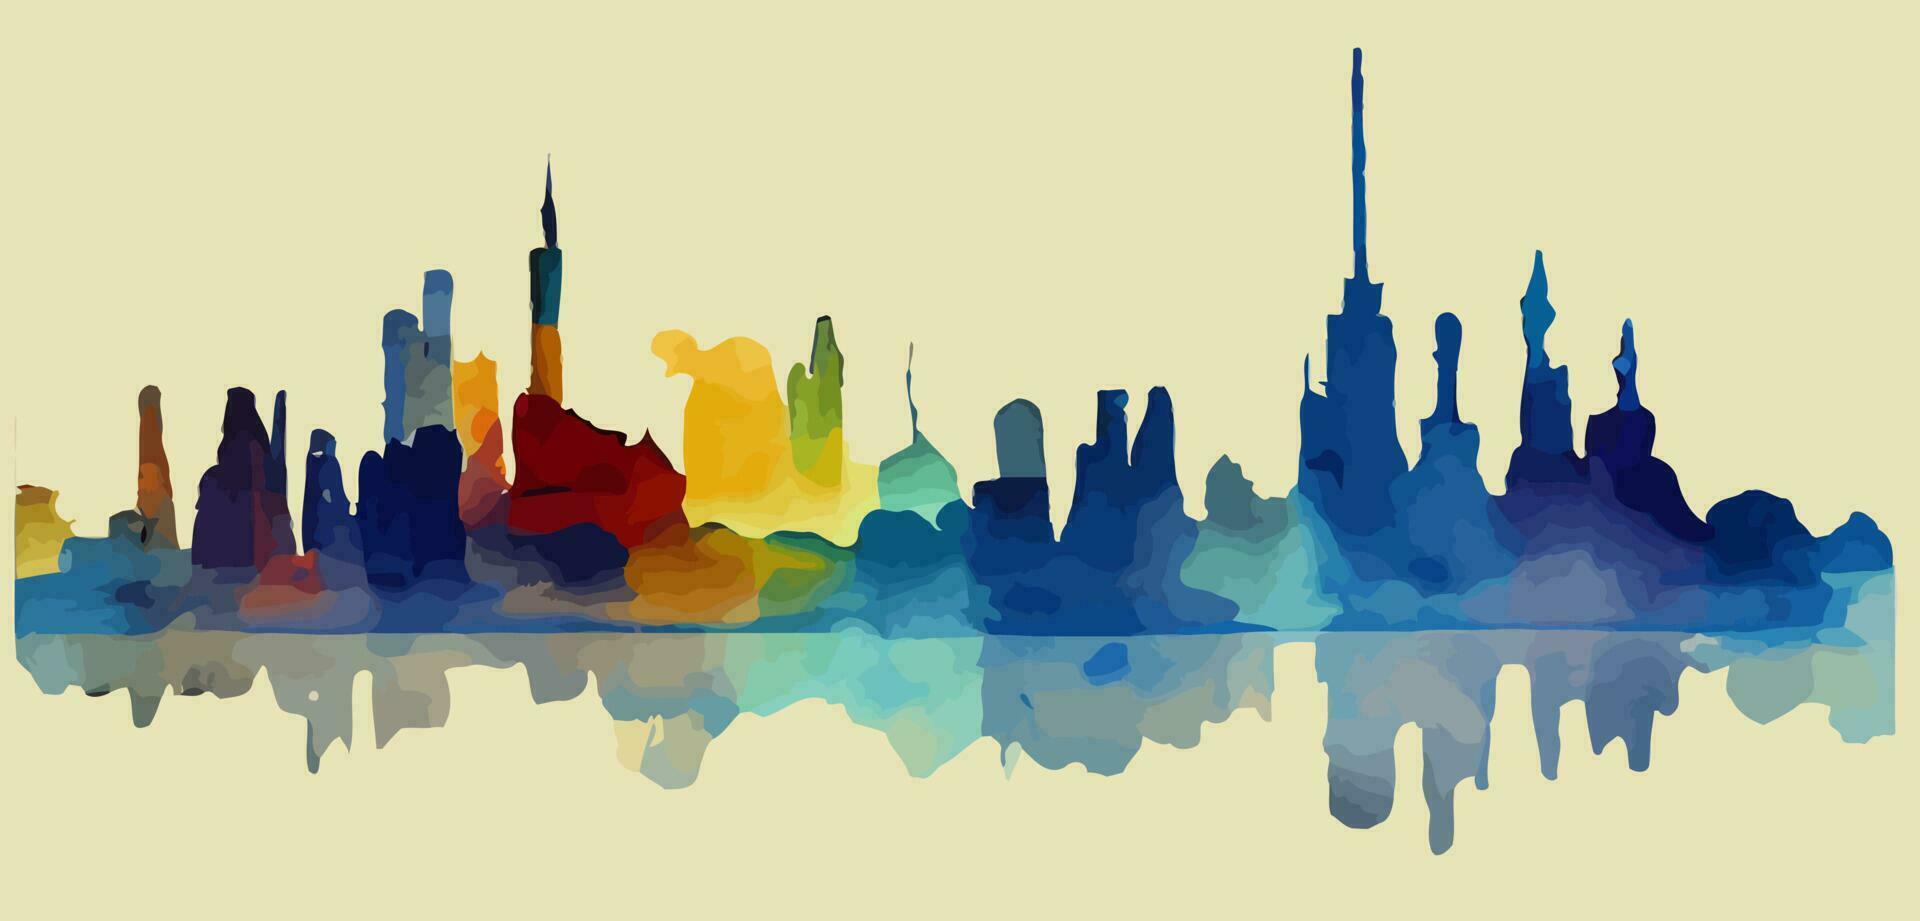 Illustrationsvektorgrafik des Skyline-Turms von New York City auf Aquarellmalerei-Stil gut für den Druck auf Postkarte, Poster oder Hintergrund vektor